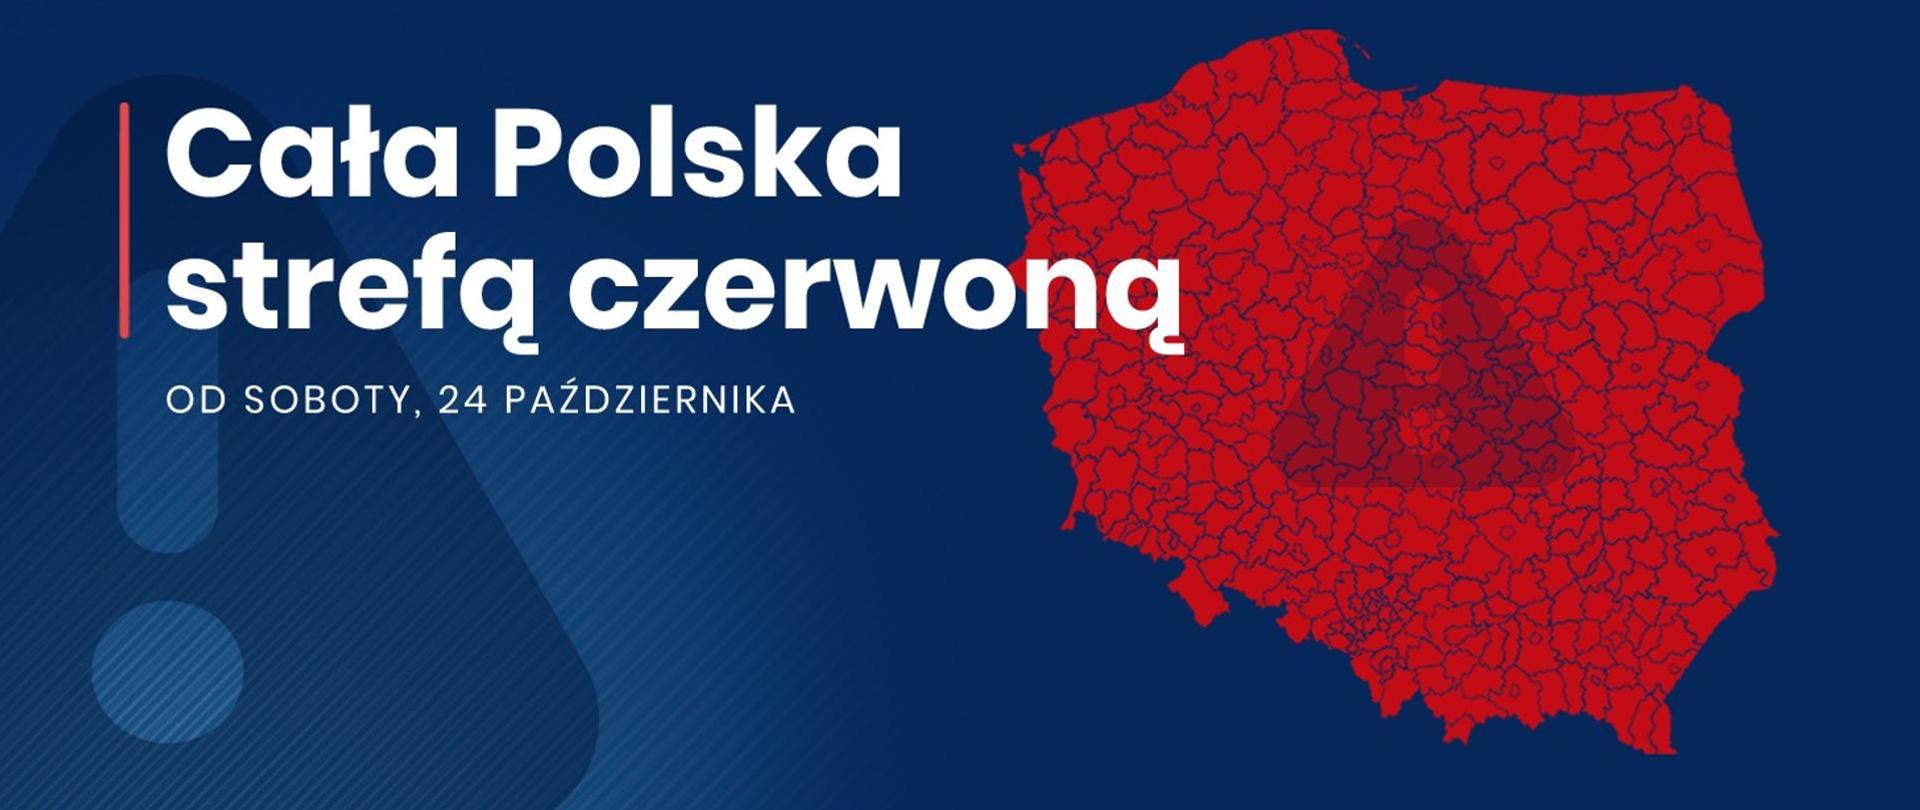 Grafika z mapą Polski i napisem Cała Polska strefą czerwoną.